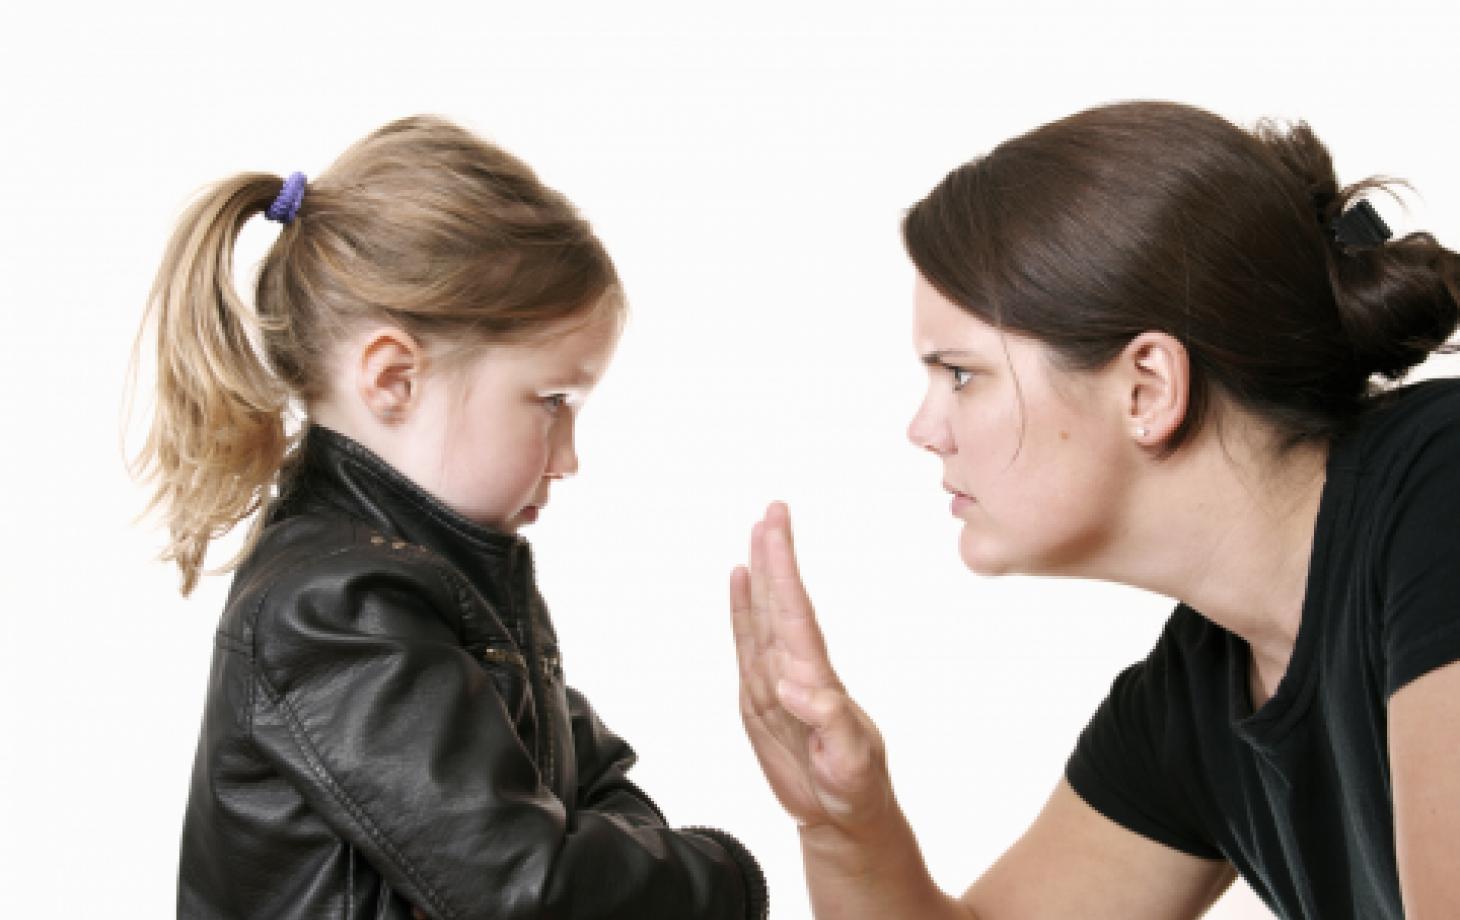 Чужой взрослый ругает ребенка. Как реагировать? Инструкция для родителей |  СП - Новости Бельцы Молдова